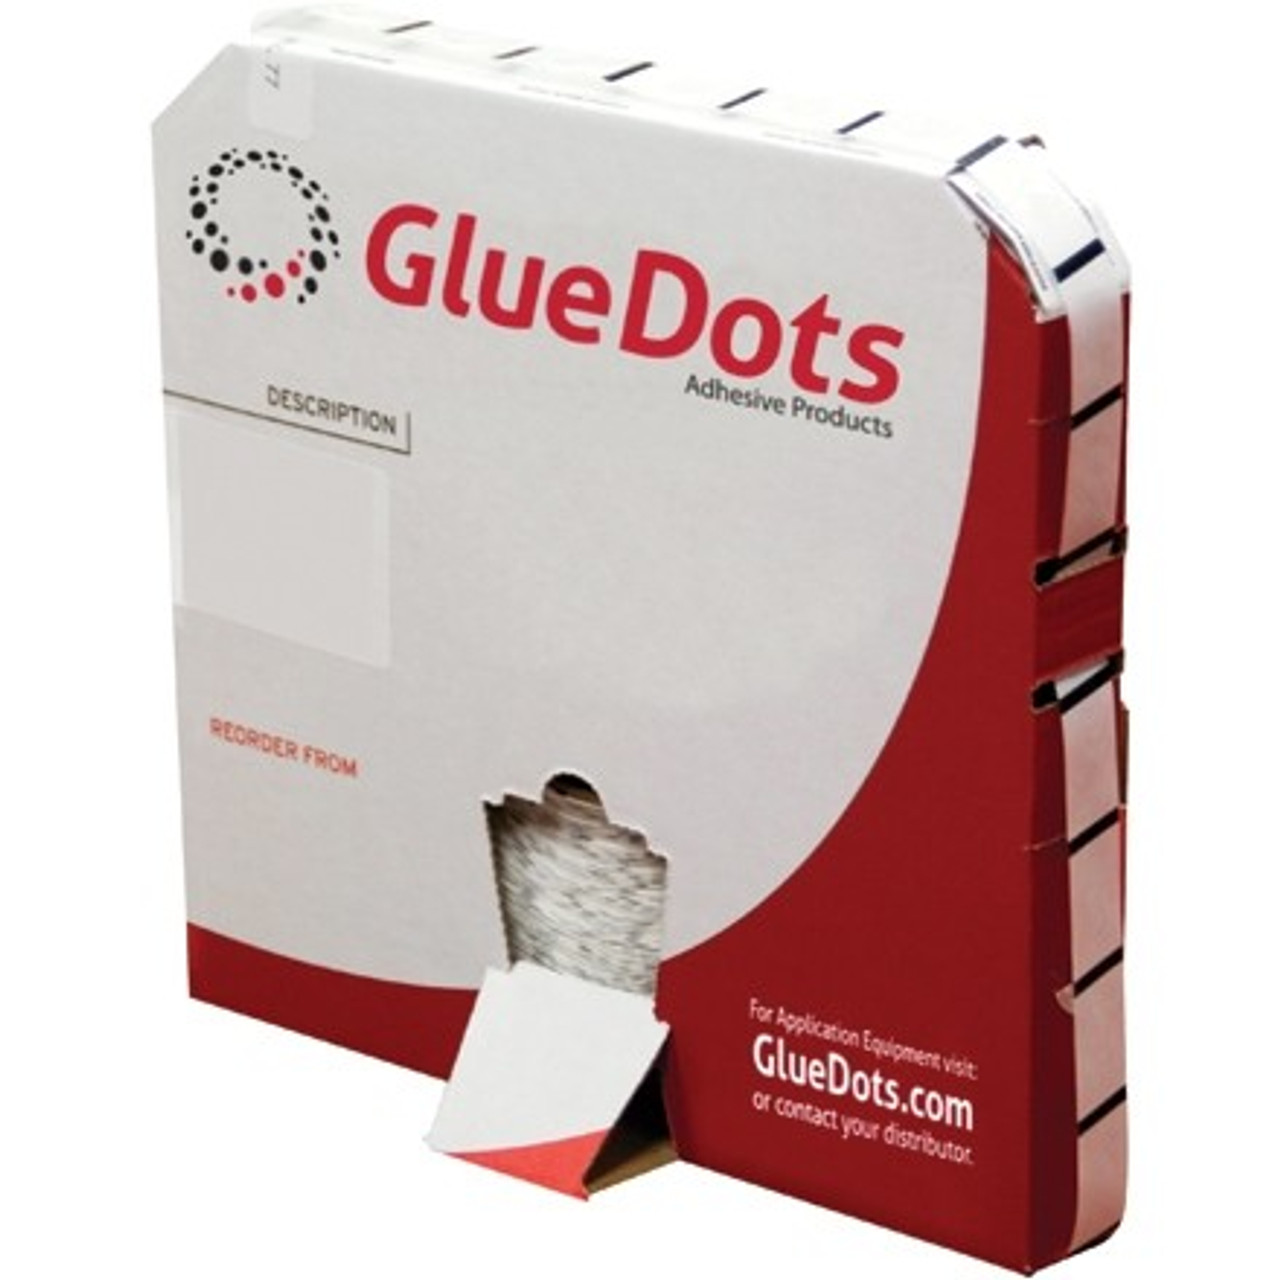 1/2" Medium Profile High Tack Glue Dots - box of 2000 dots